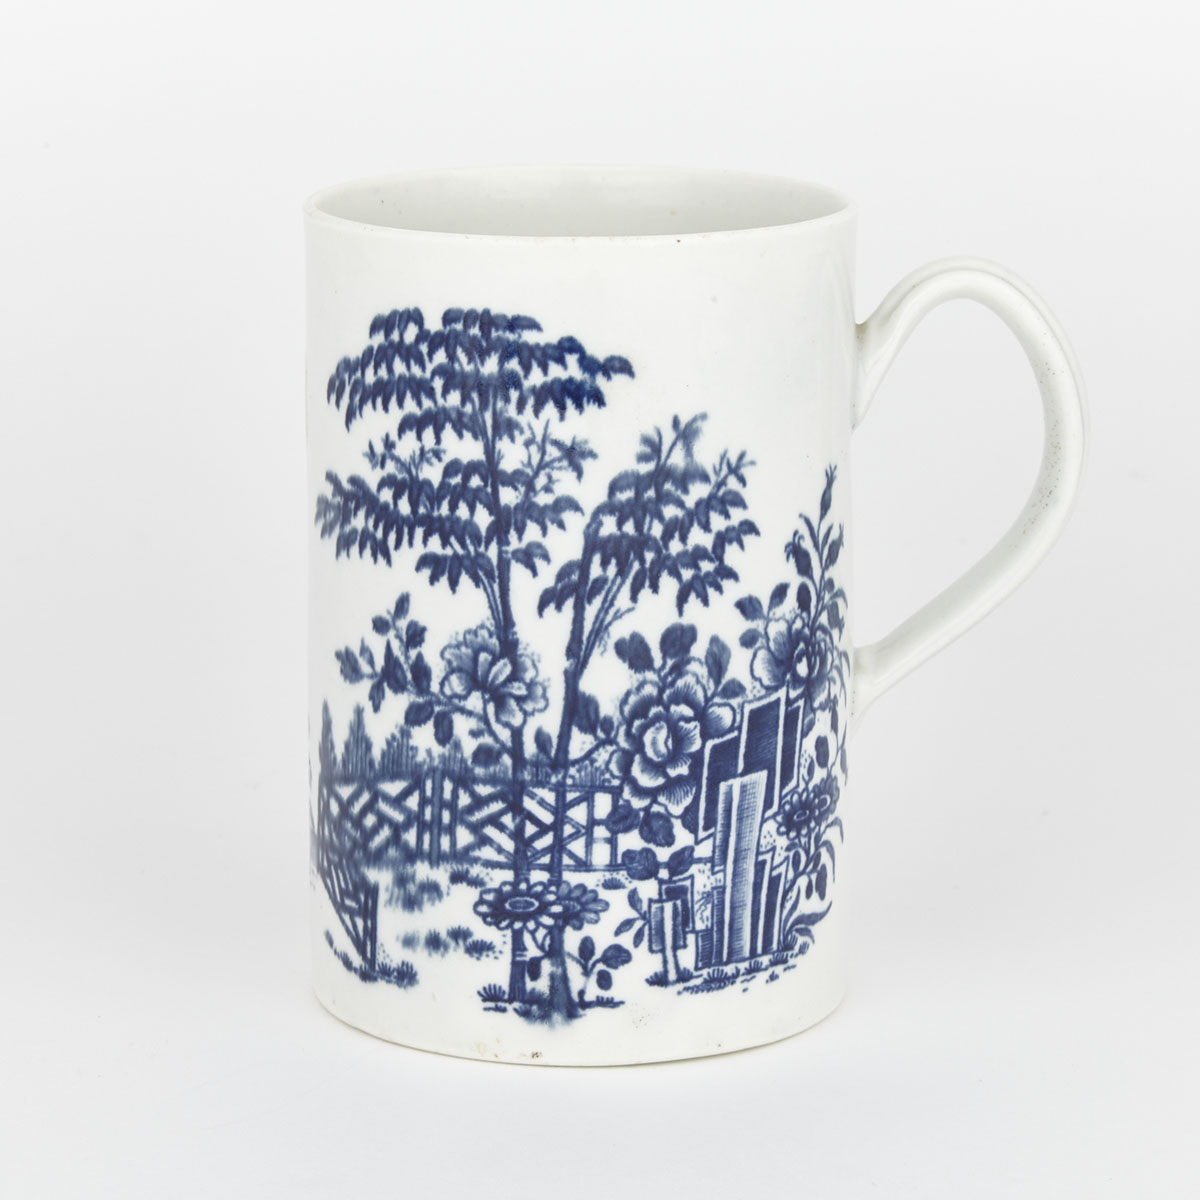 Worcester ‘Plantation’ Large Mug, c.1760-70